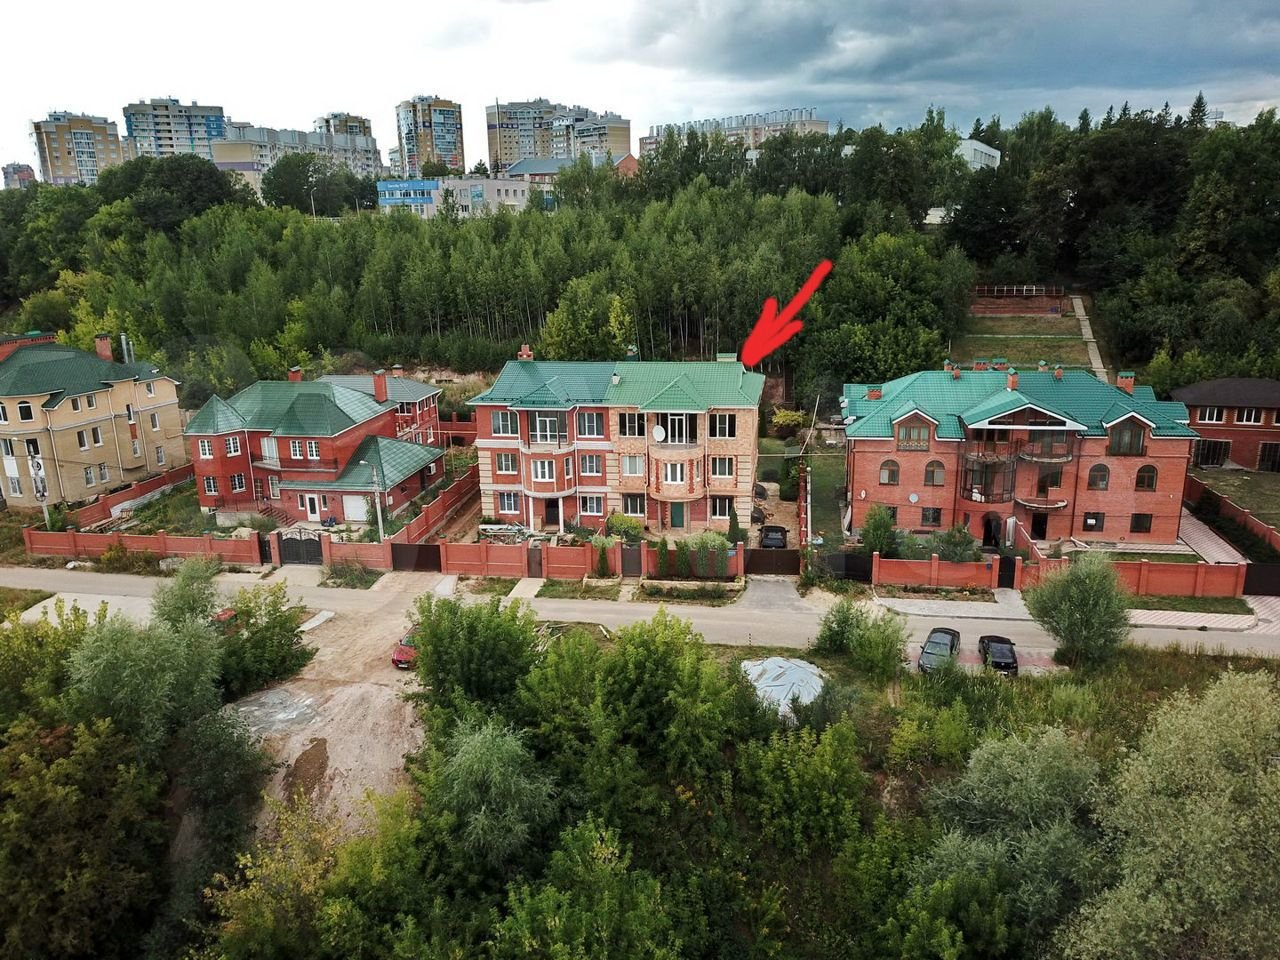 5-комнатная квартира в элитном районе Чебоксар с камином и финской сауной: есть сад с виноградниками и роща